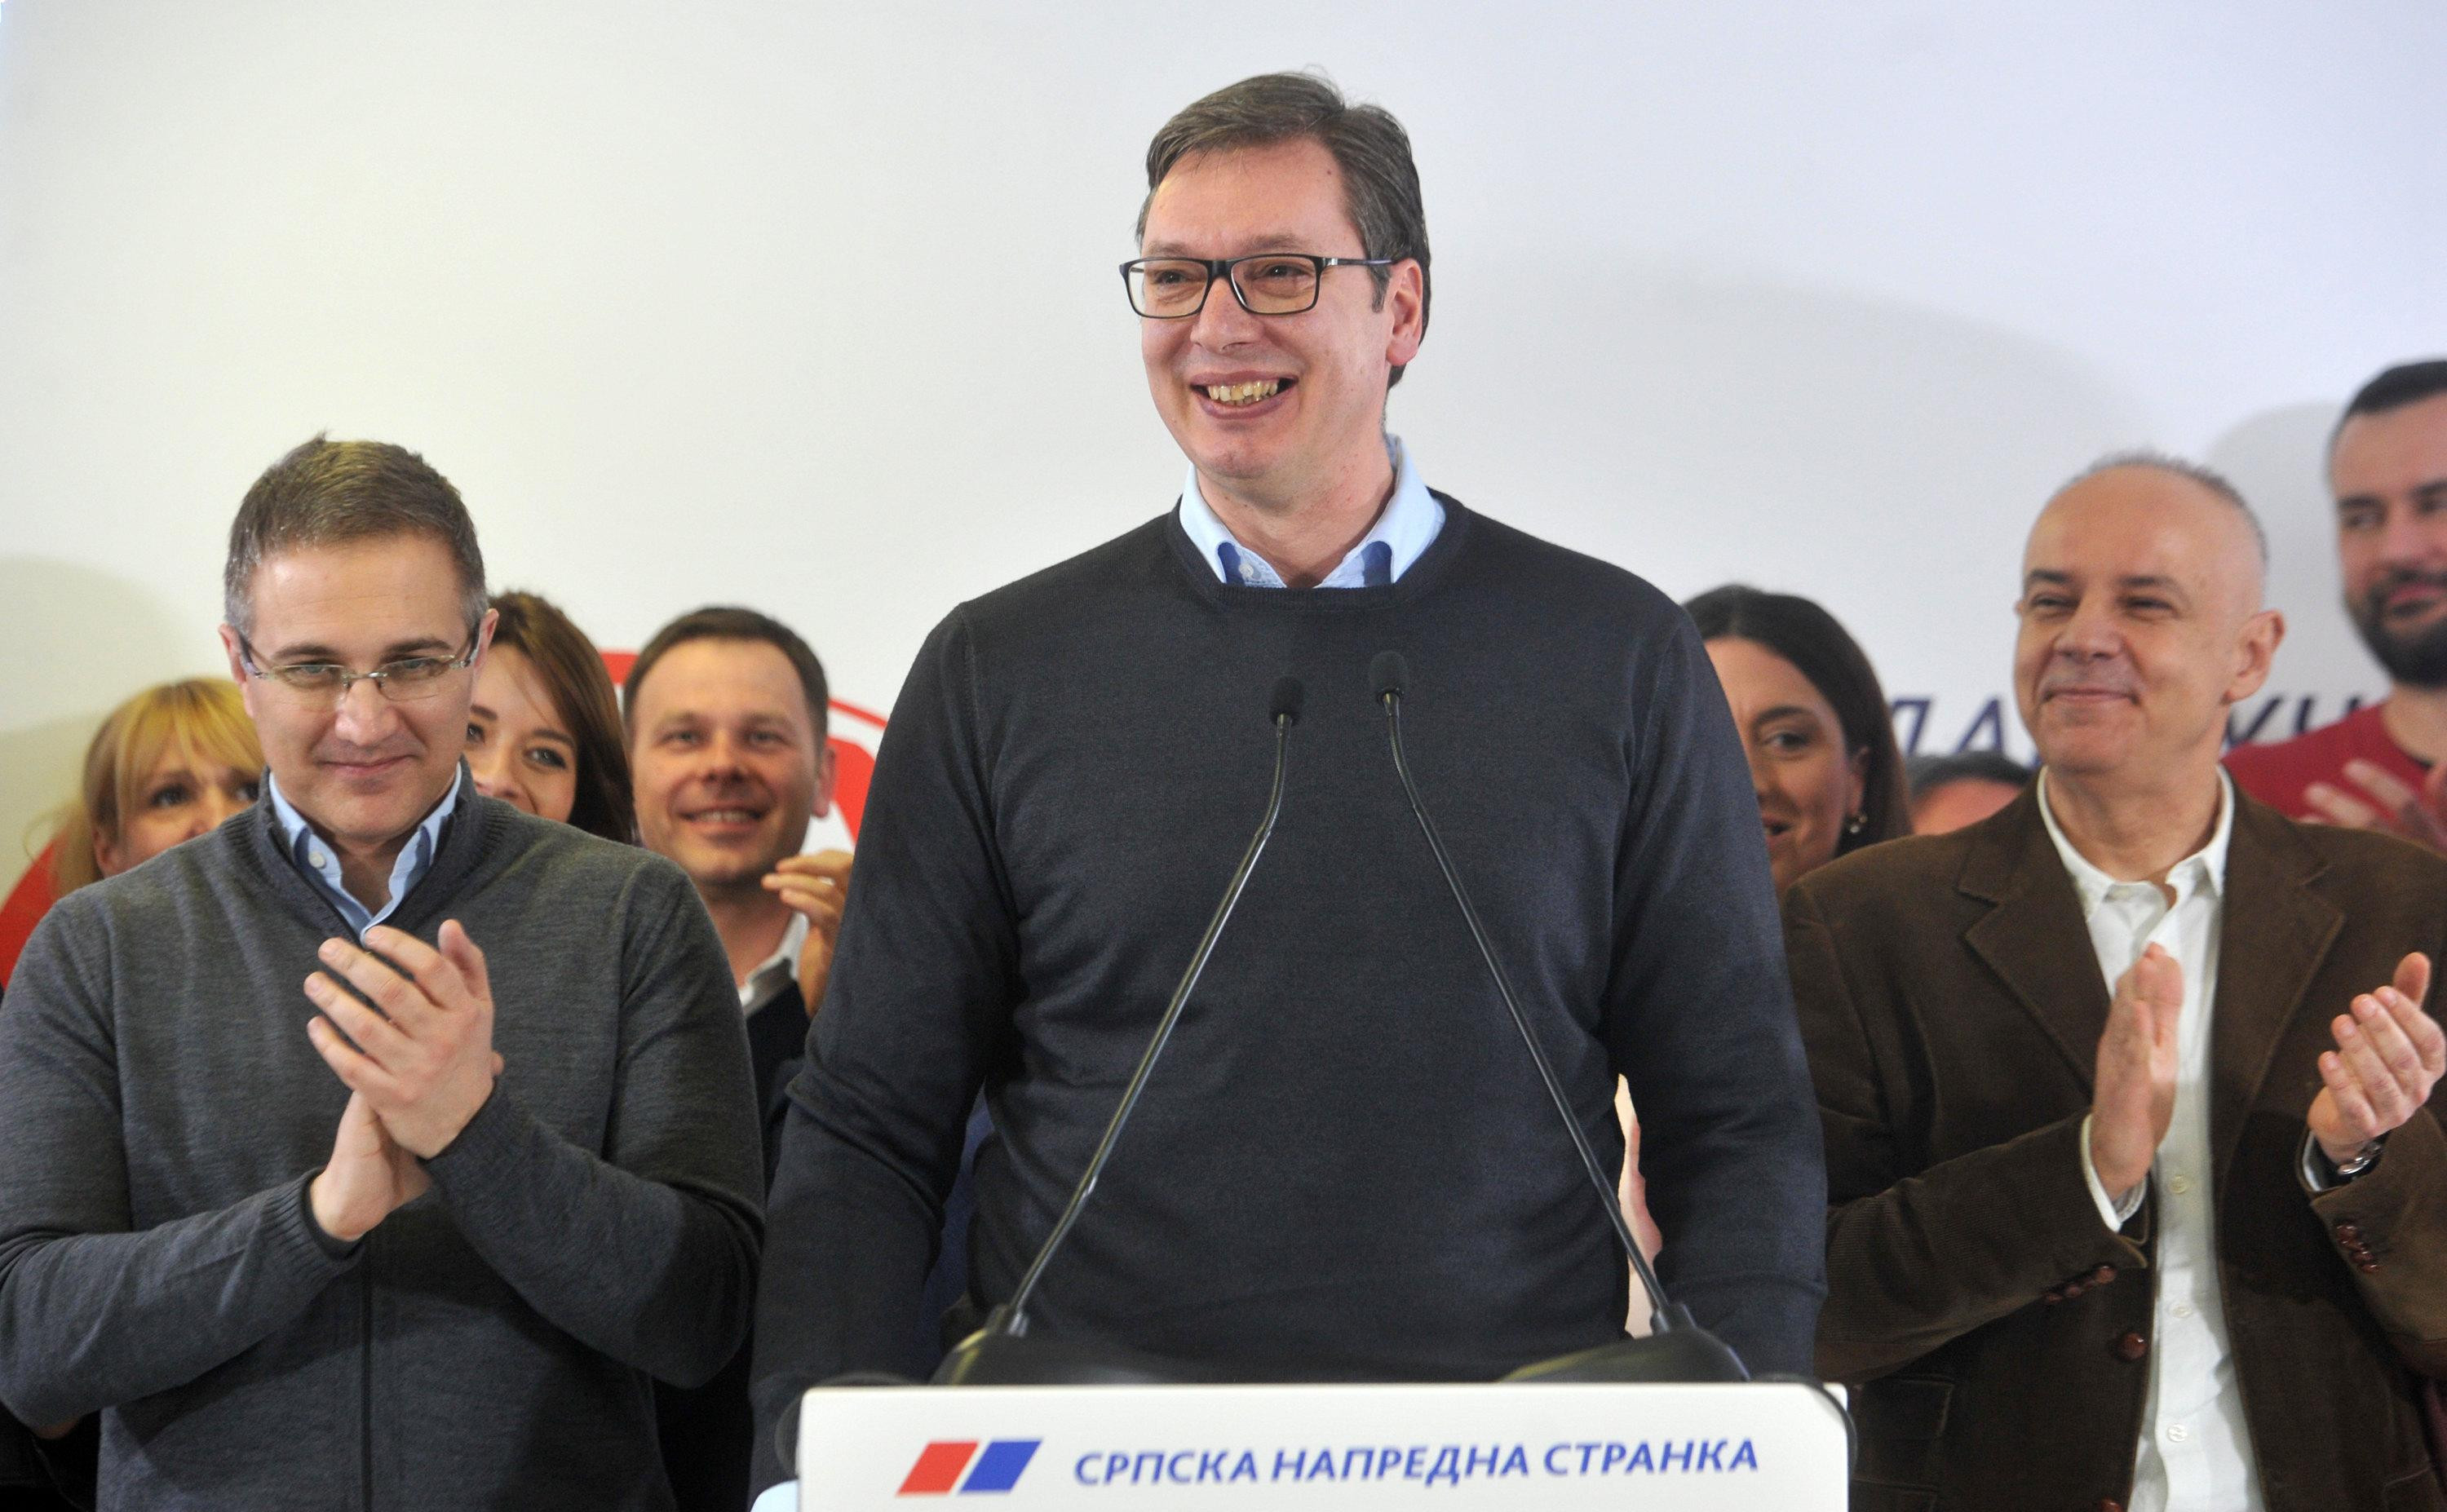 UBEDLJIVO NAJJAČI! Vučića i SNS podržava 53,3 odsto građana Srbije, ostali daleko ispod naprednjaka!